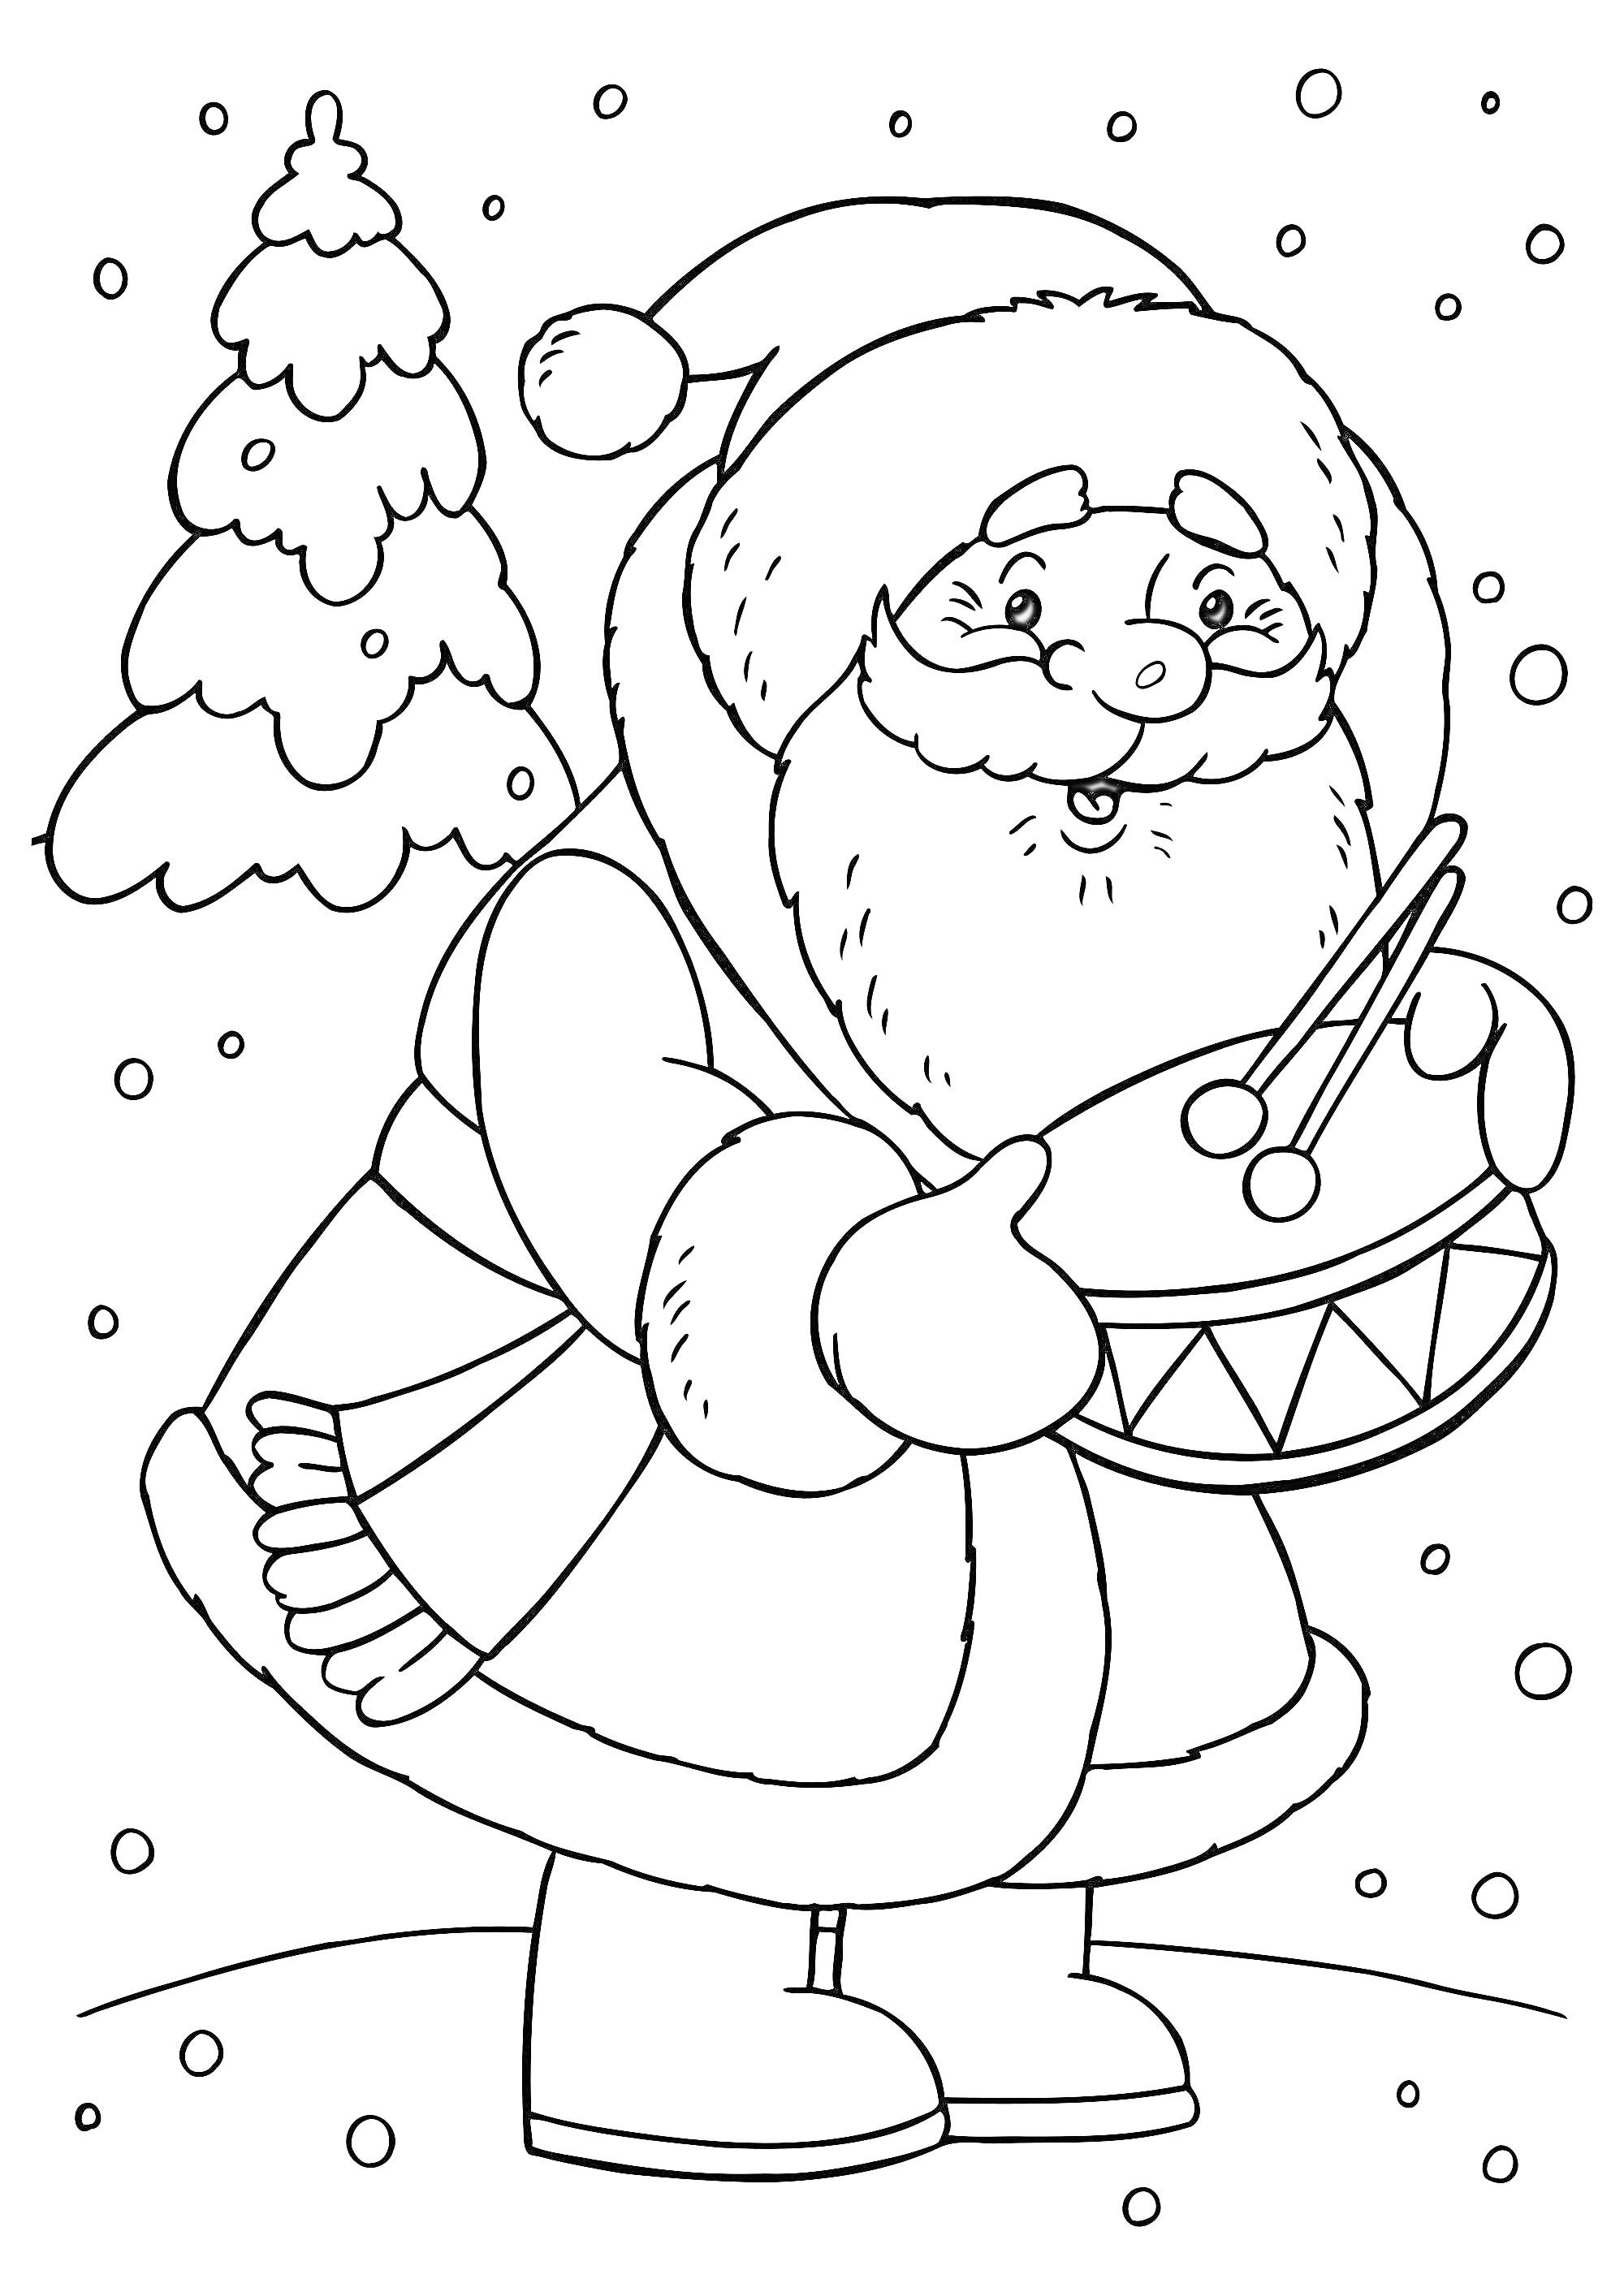 Раскраска Санта Клаус с барабаном и елкой на заснеженном фоне